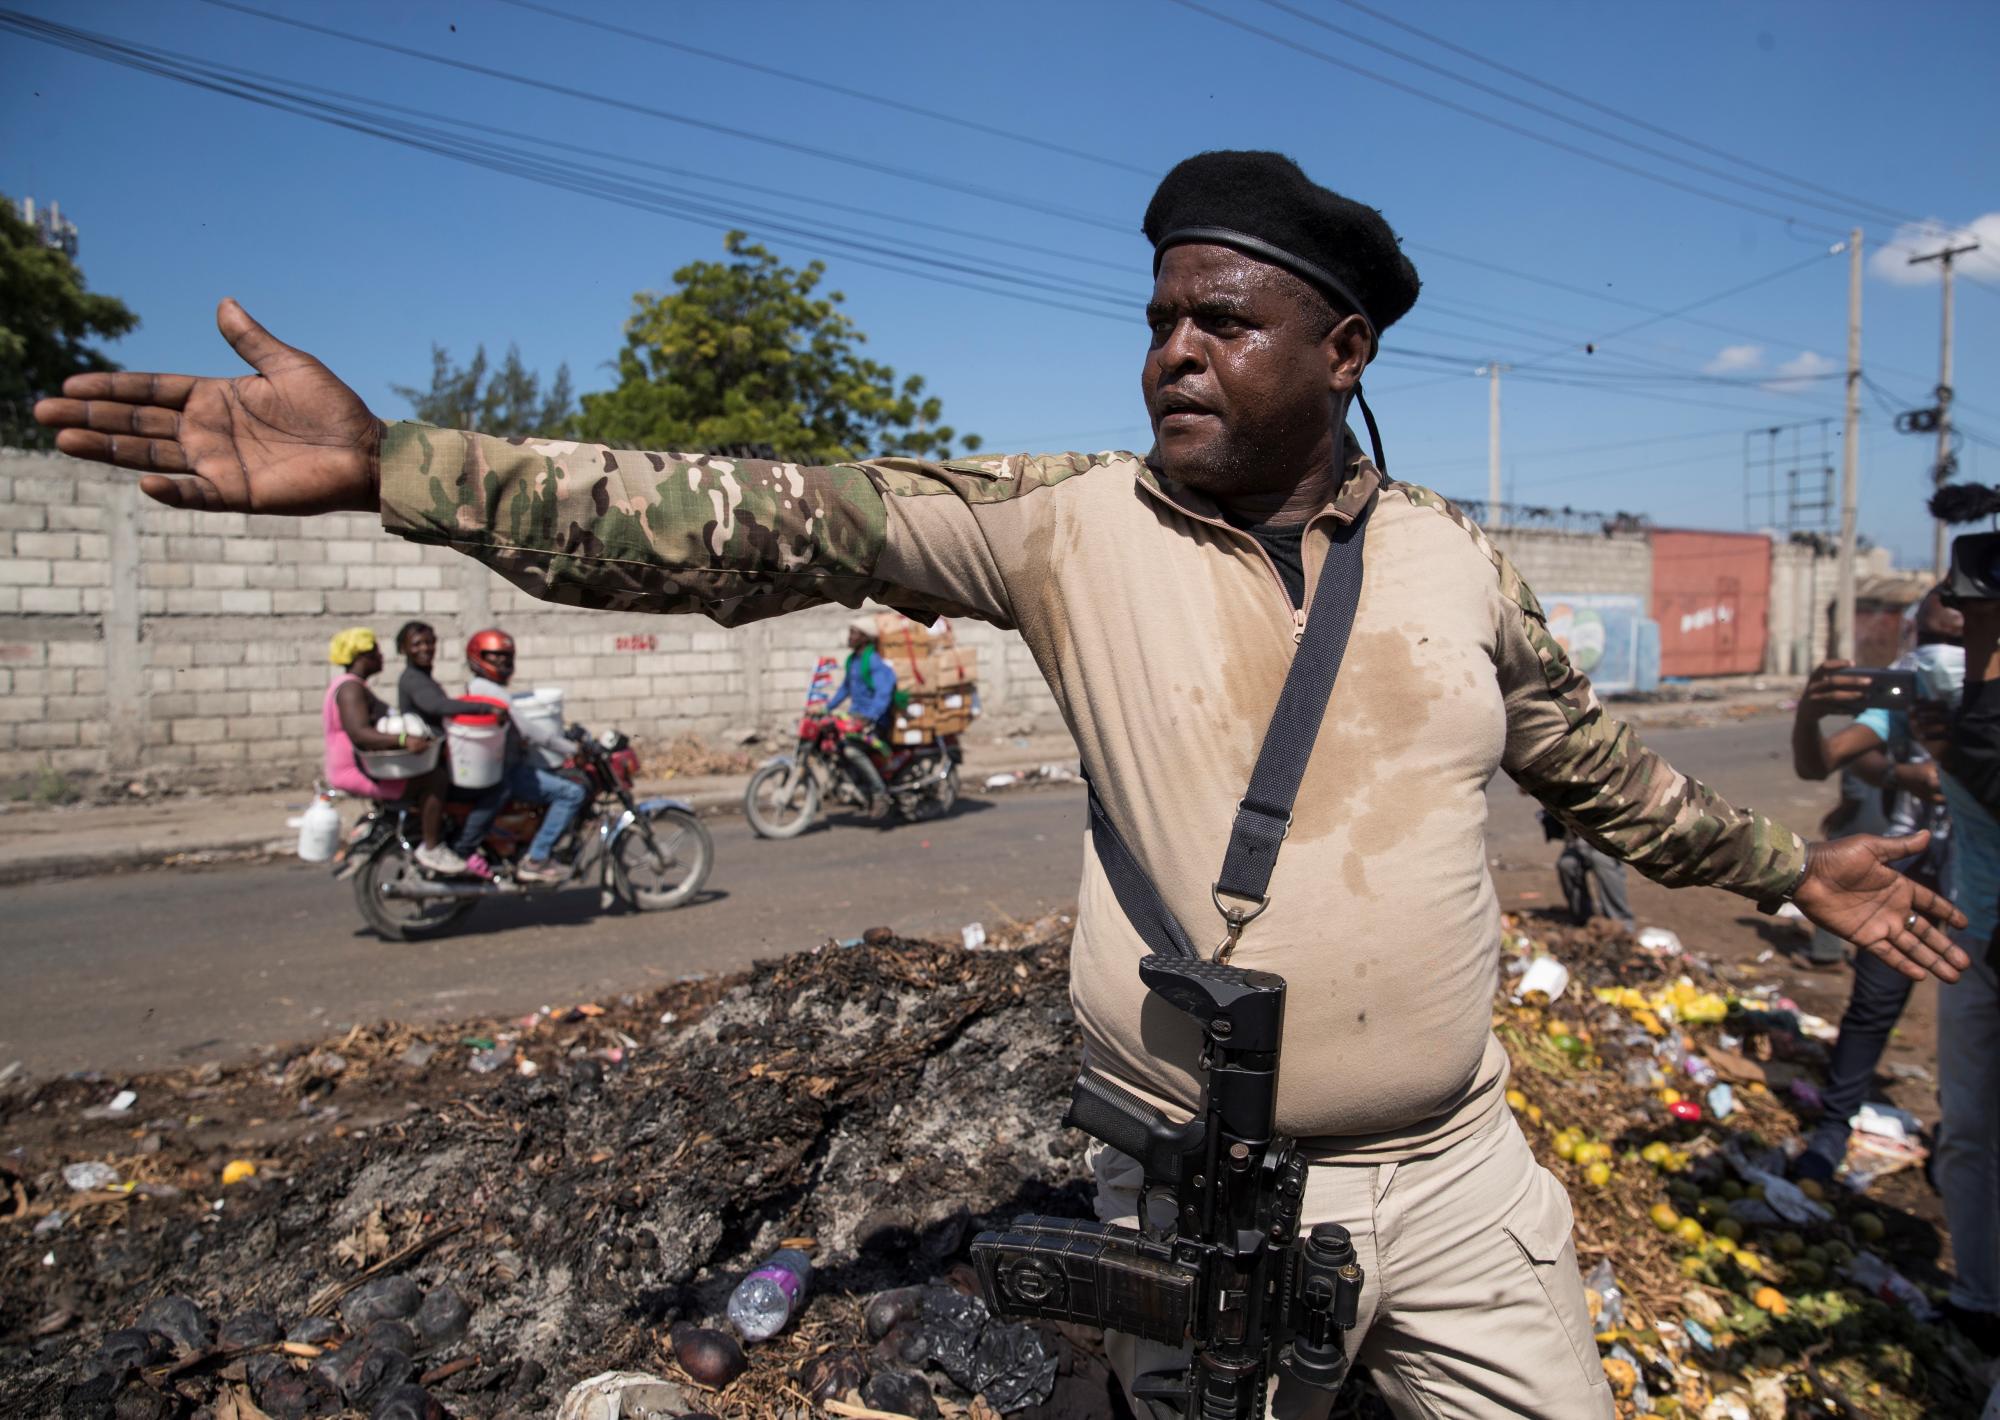 Barbecue, el rostro de la amenaza al poder en Haití